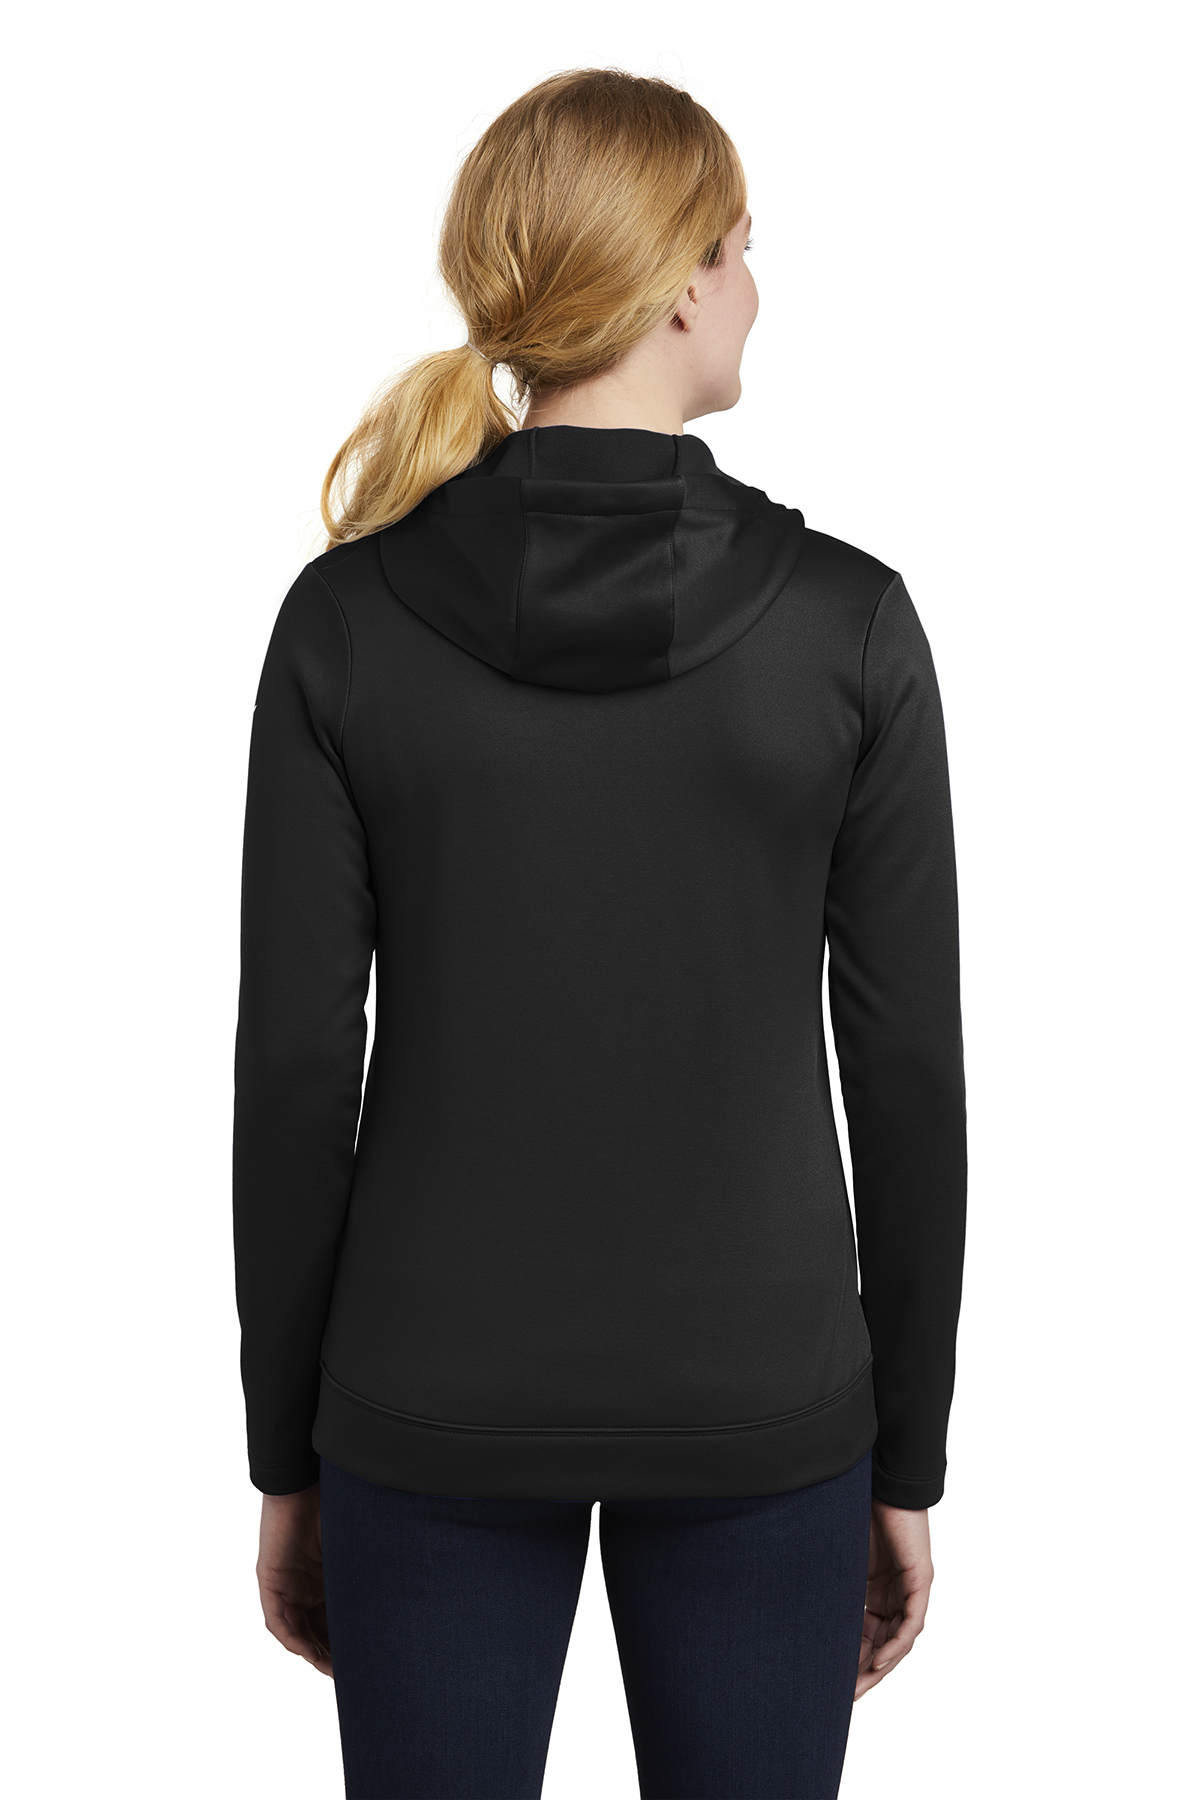 Nike Ladies Therma-FIT Full-Zip Fleece Hoodie | Product | SanMar | Zip Hoodies